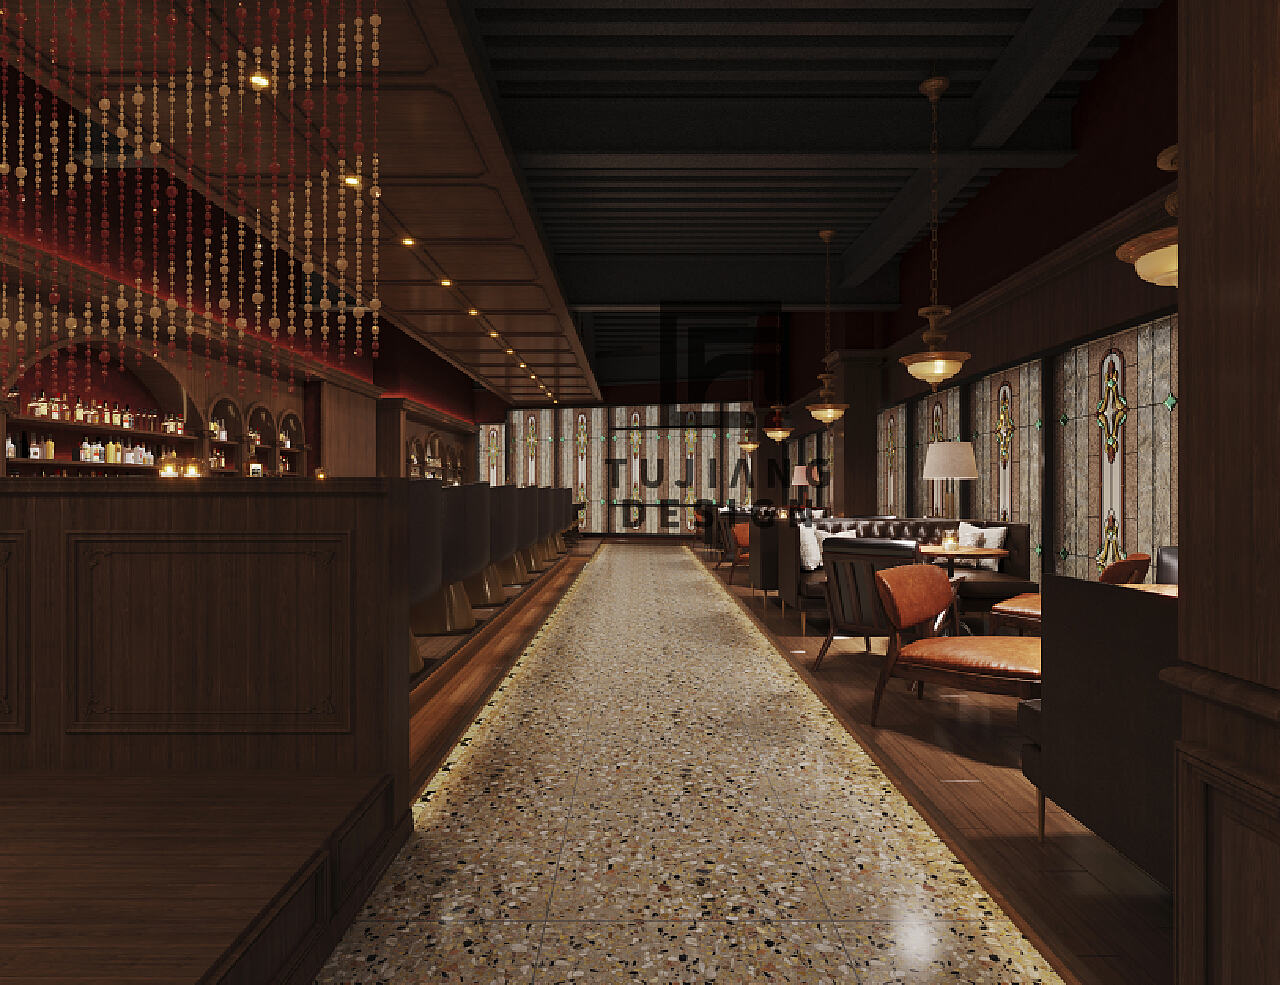 新冶组设计--鞍山可可芭比酒吧-设计案例--餐厅酒吧--大橡_泛家居供应链第一网